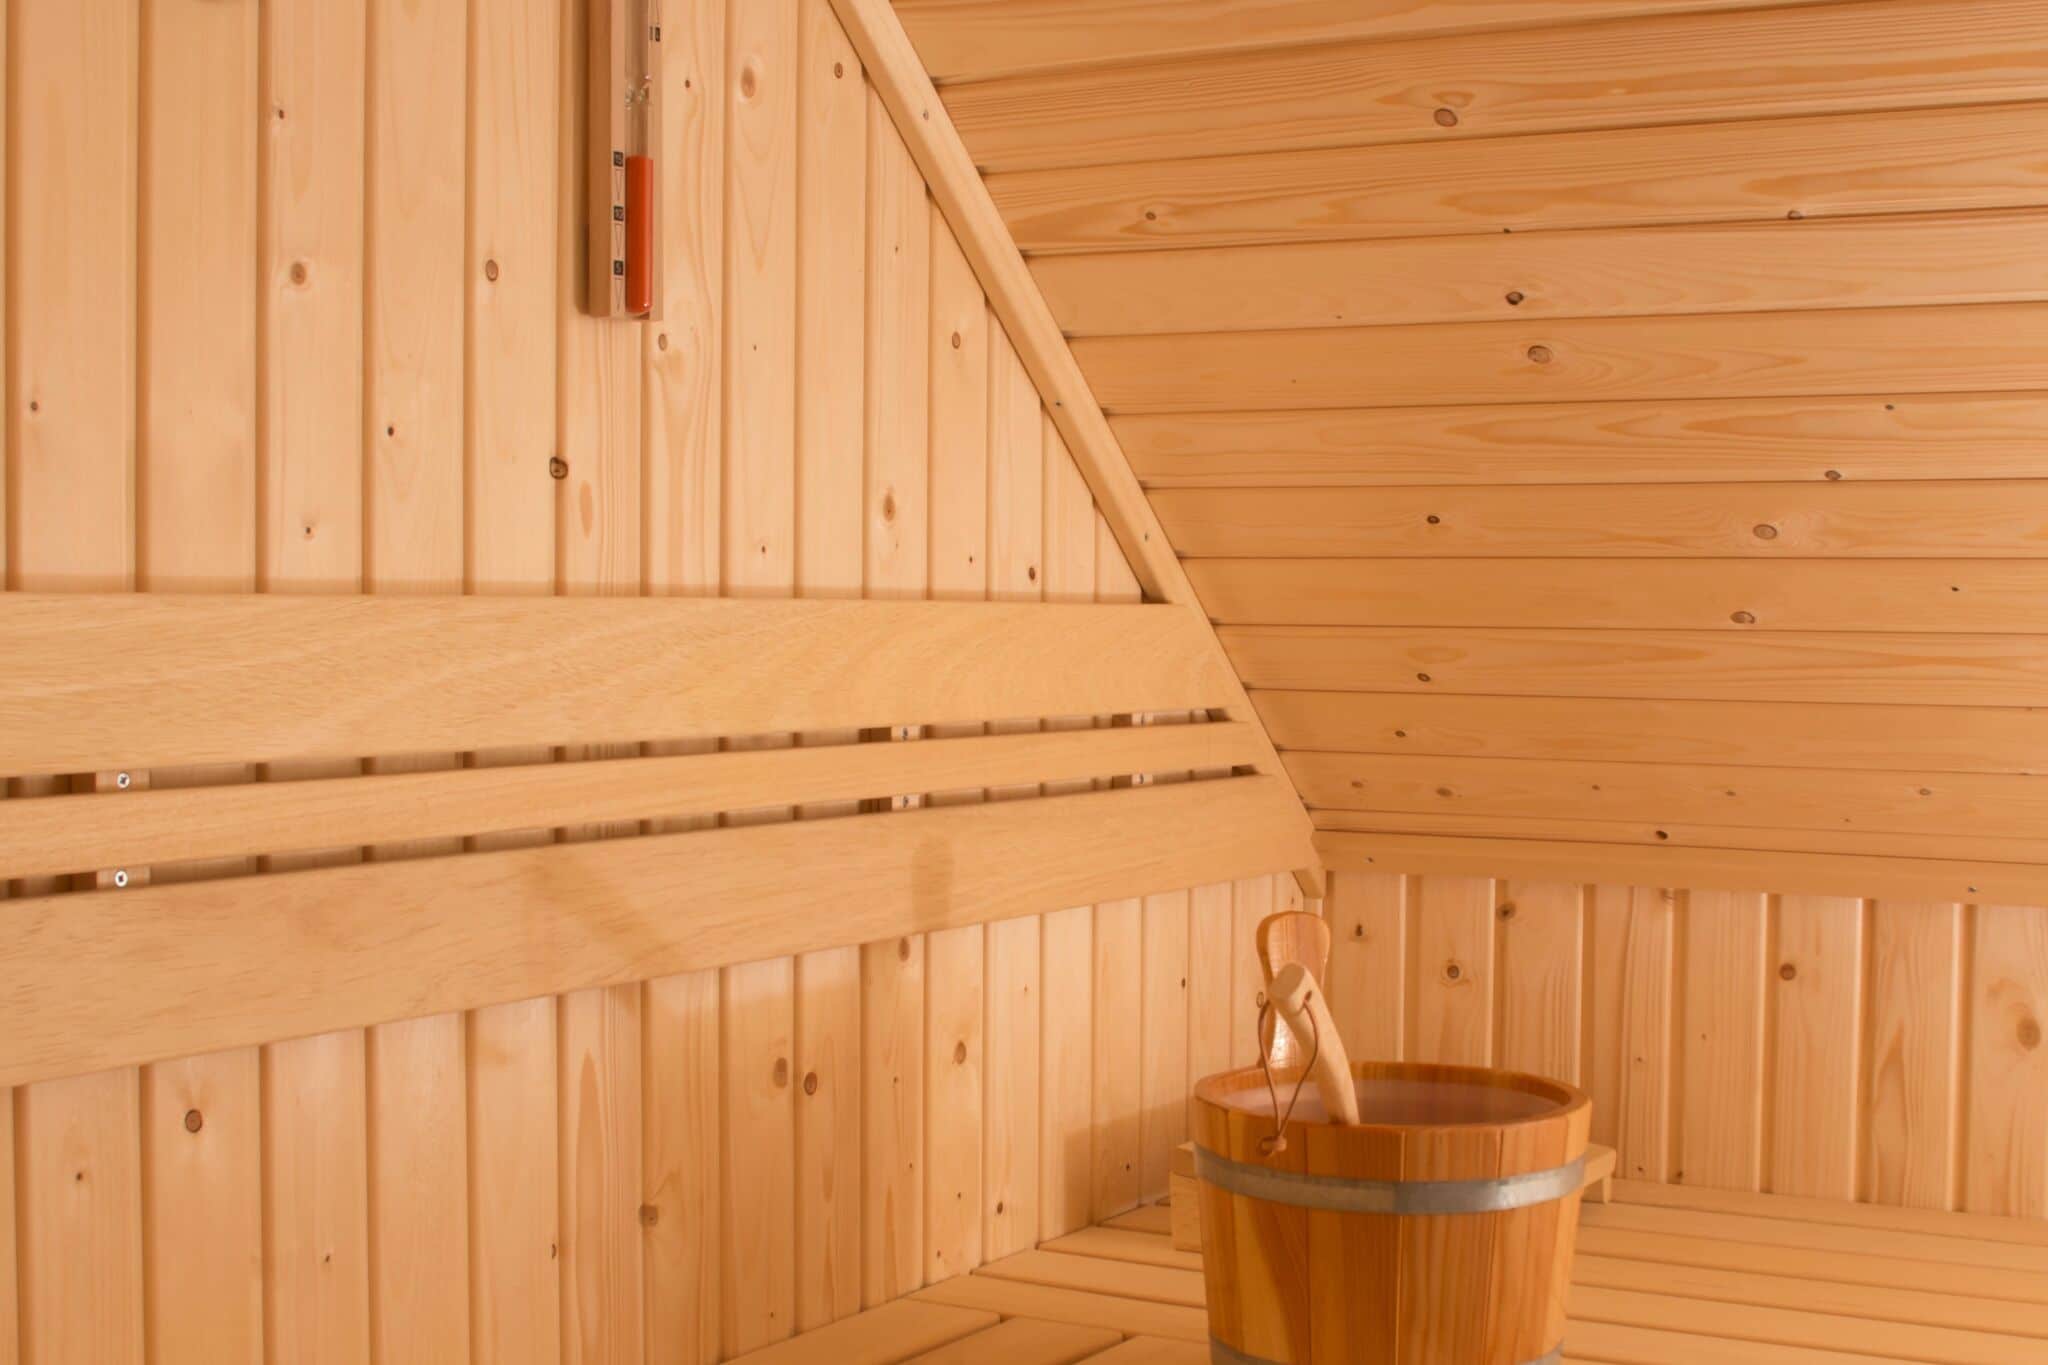 Maison de vacances avec bain à remous et sauna